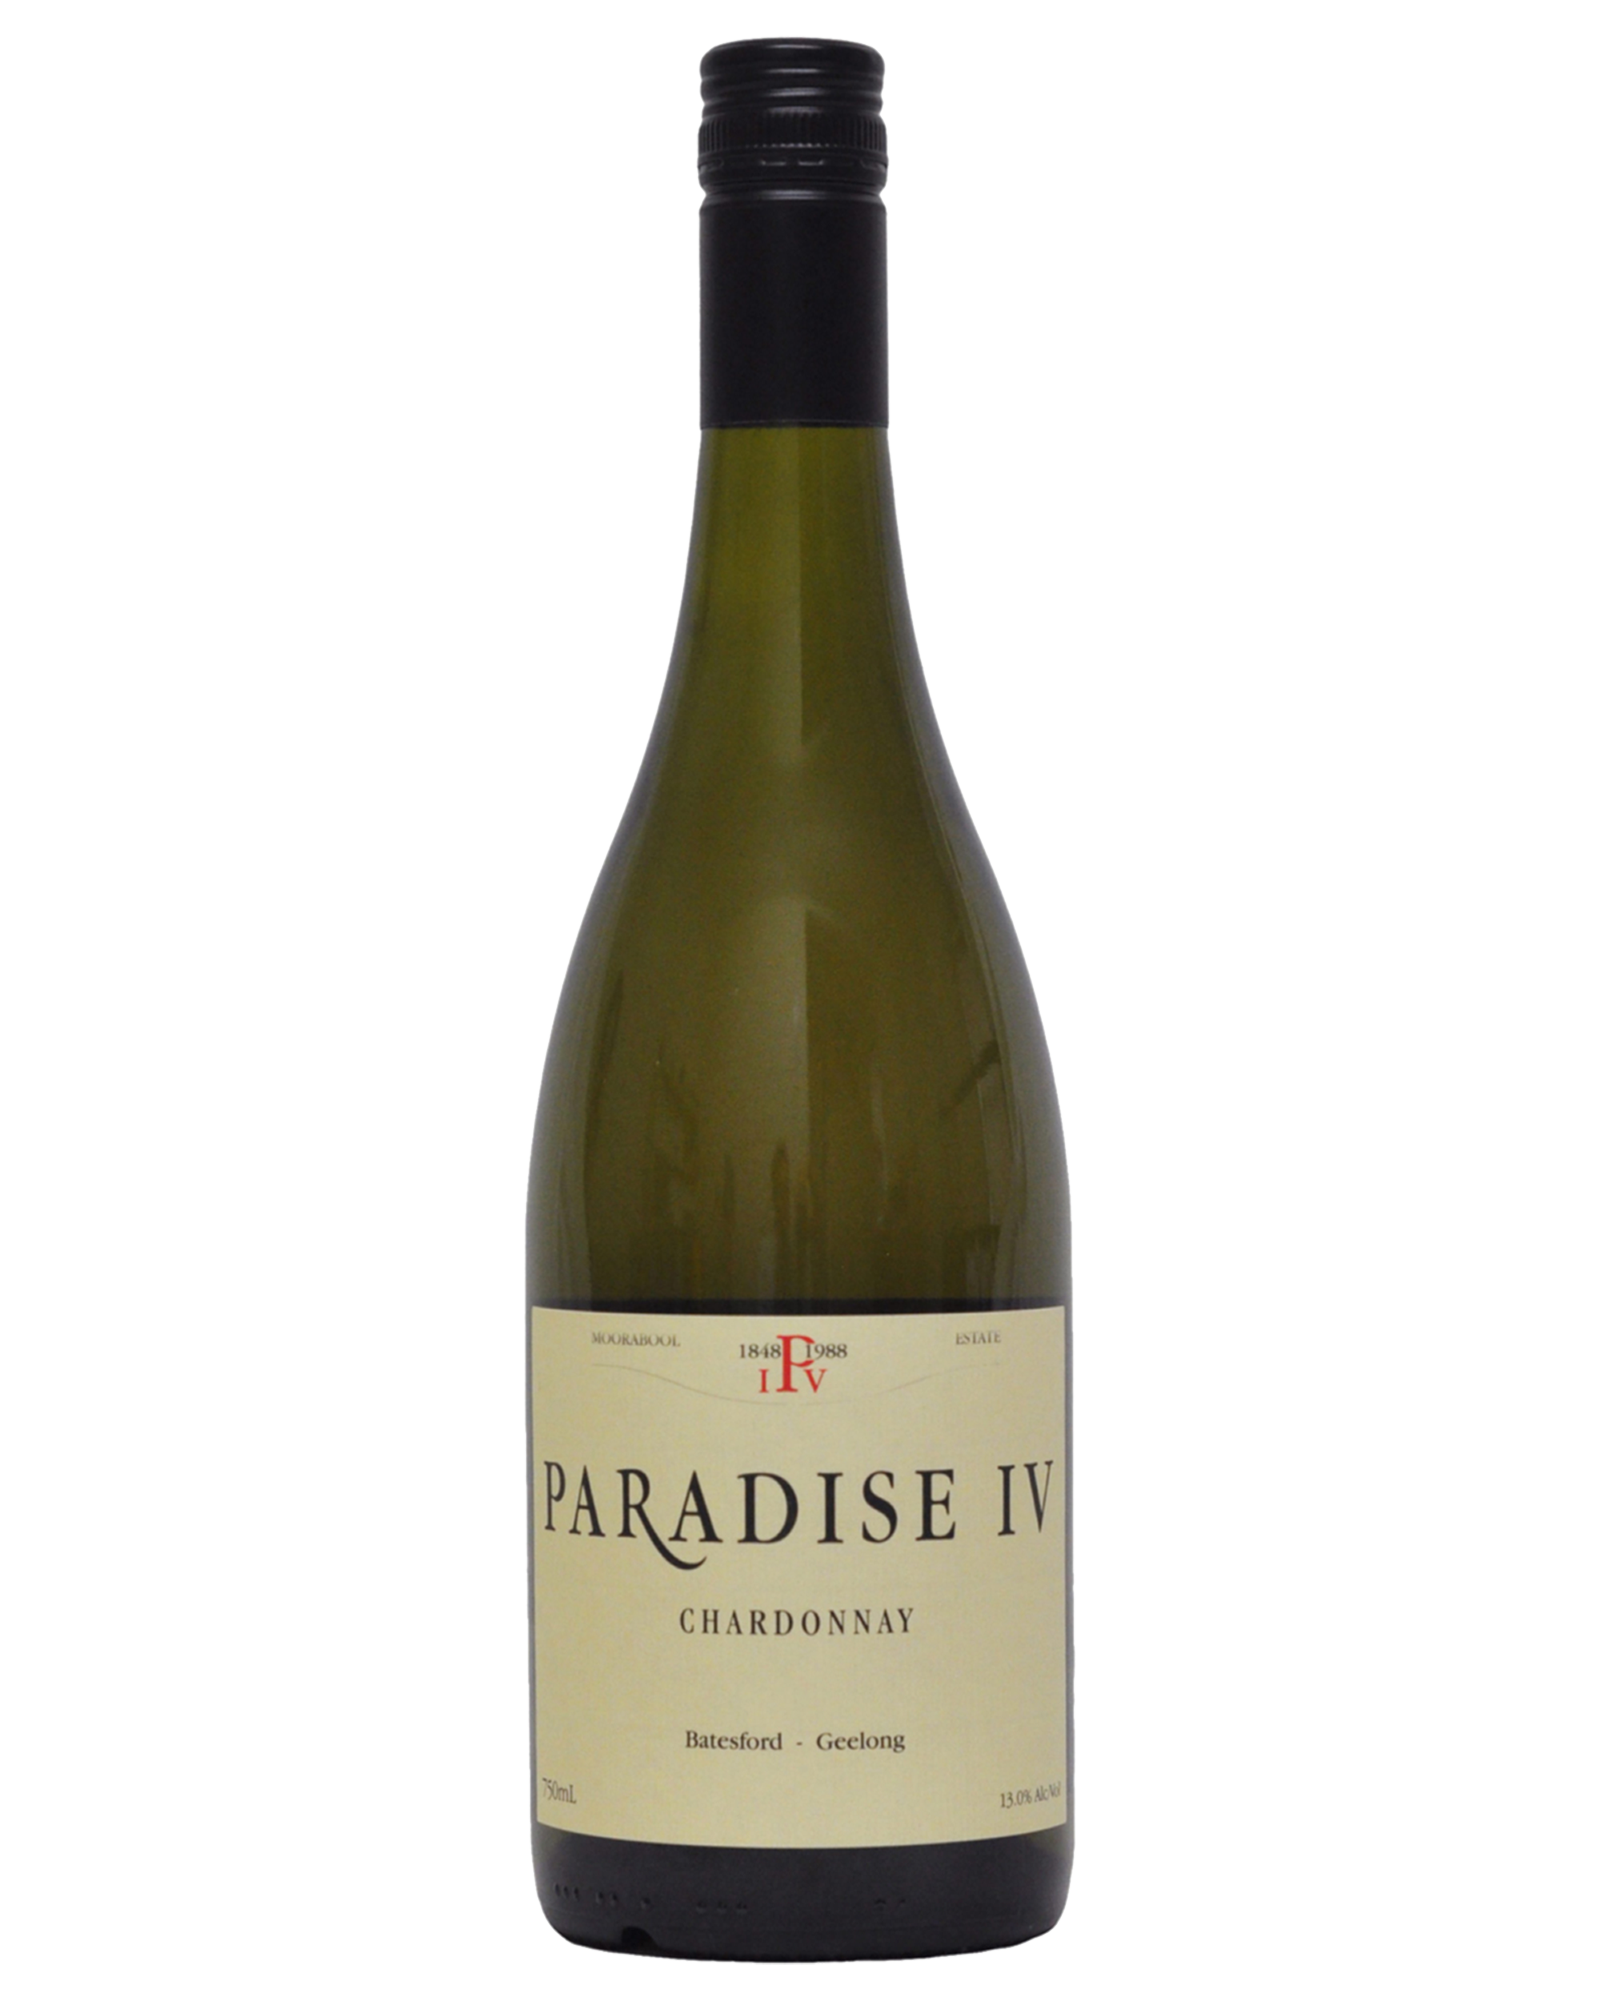 Paradise IV Chardonnay